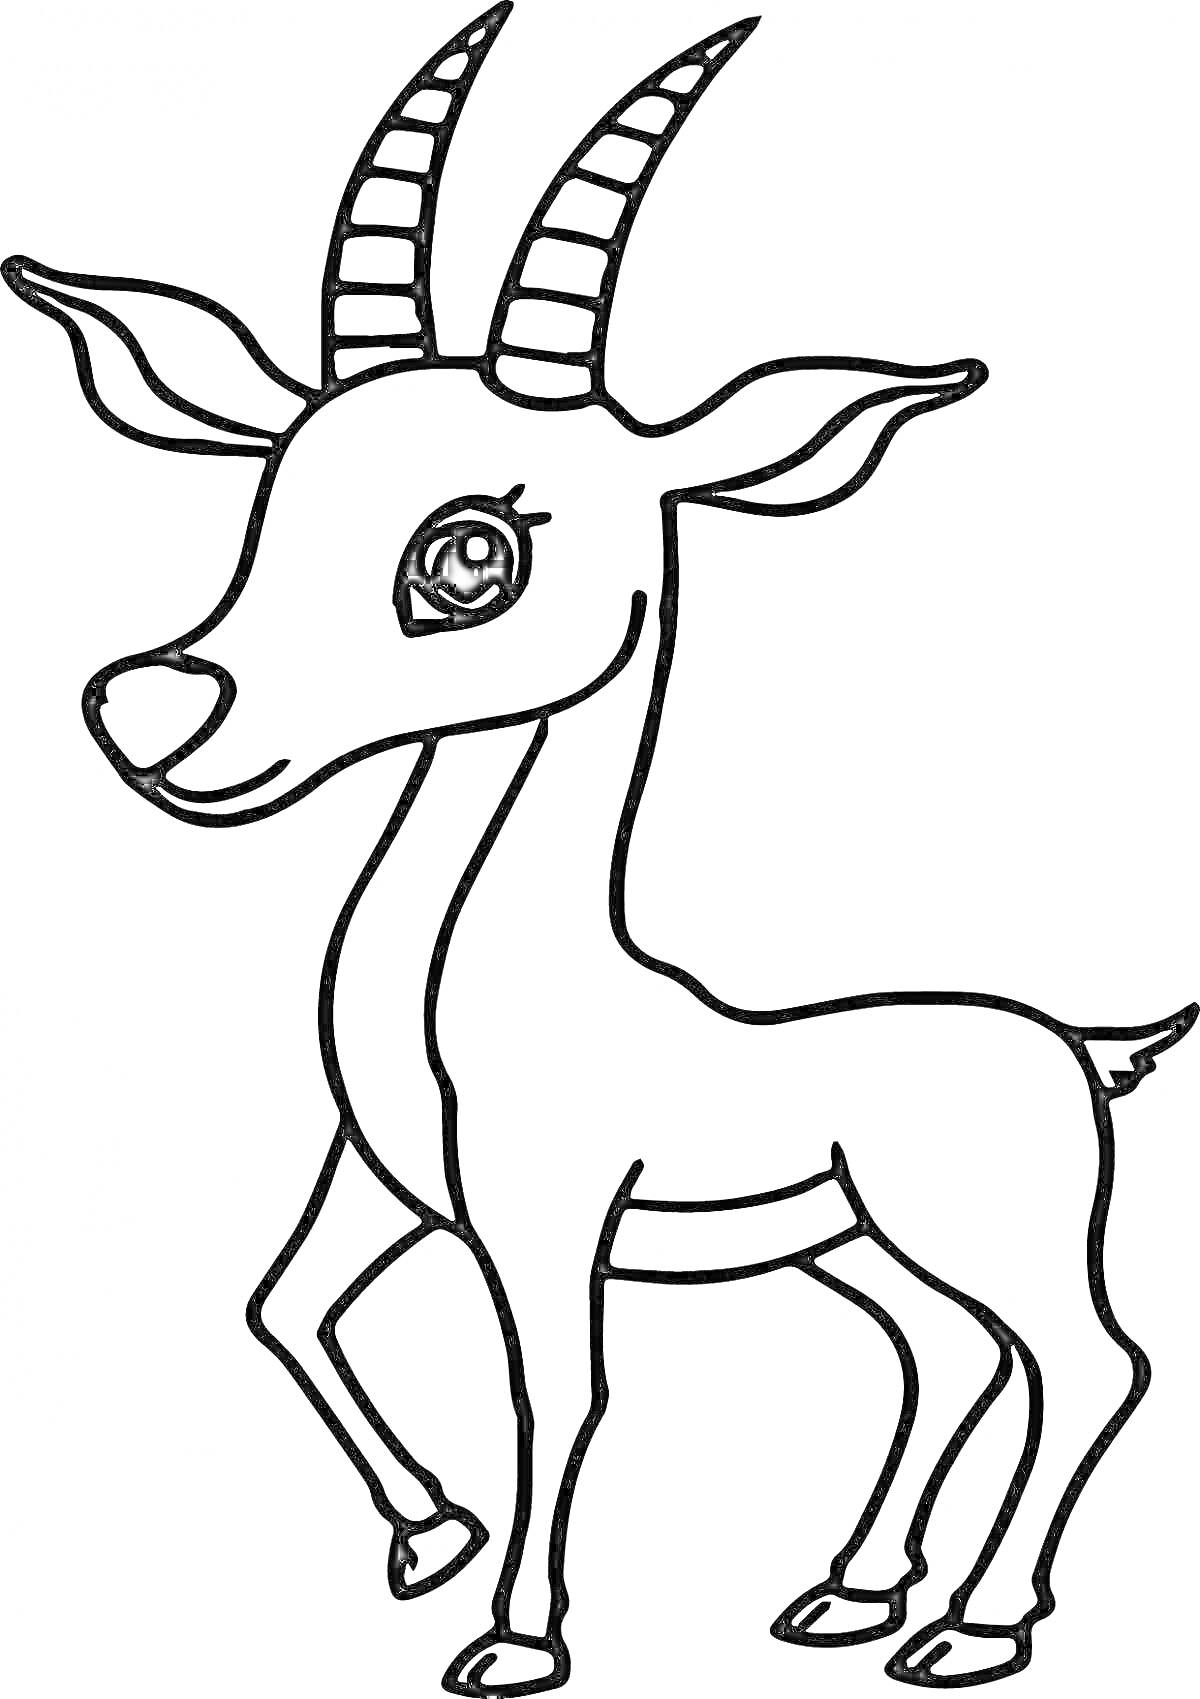 Раскраска Раскраска газель с большими глазами и рогами